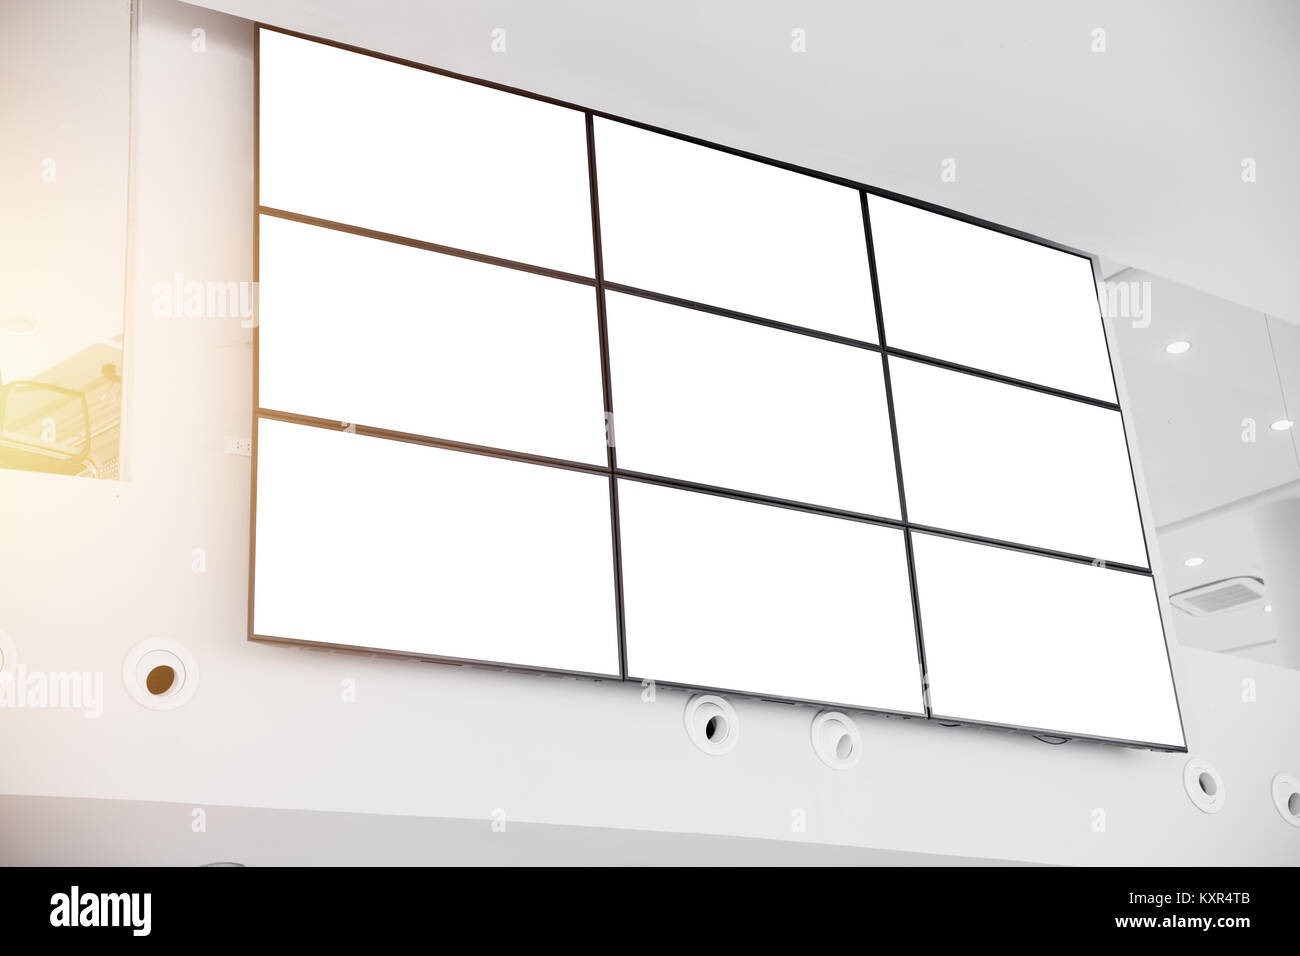 Wand-LCD-Display Panel in der modernen Bürogebäude mit Beschneidungspfaden  auf Leerer Bildschirm Stockfotografie - Alamy